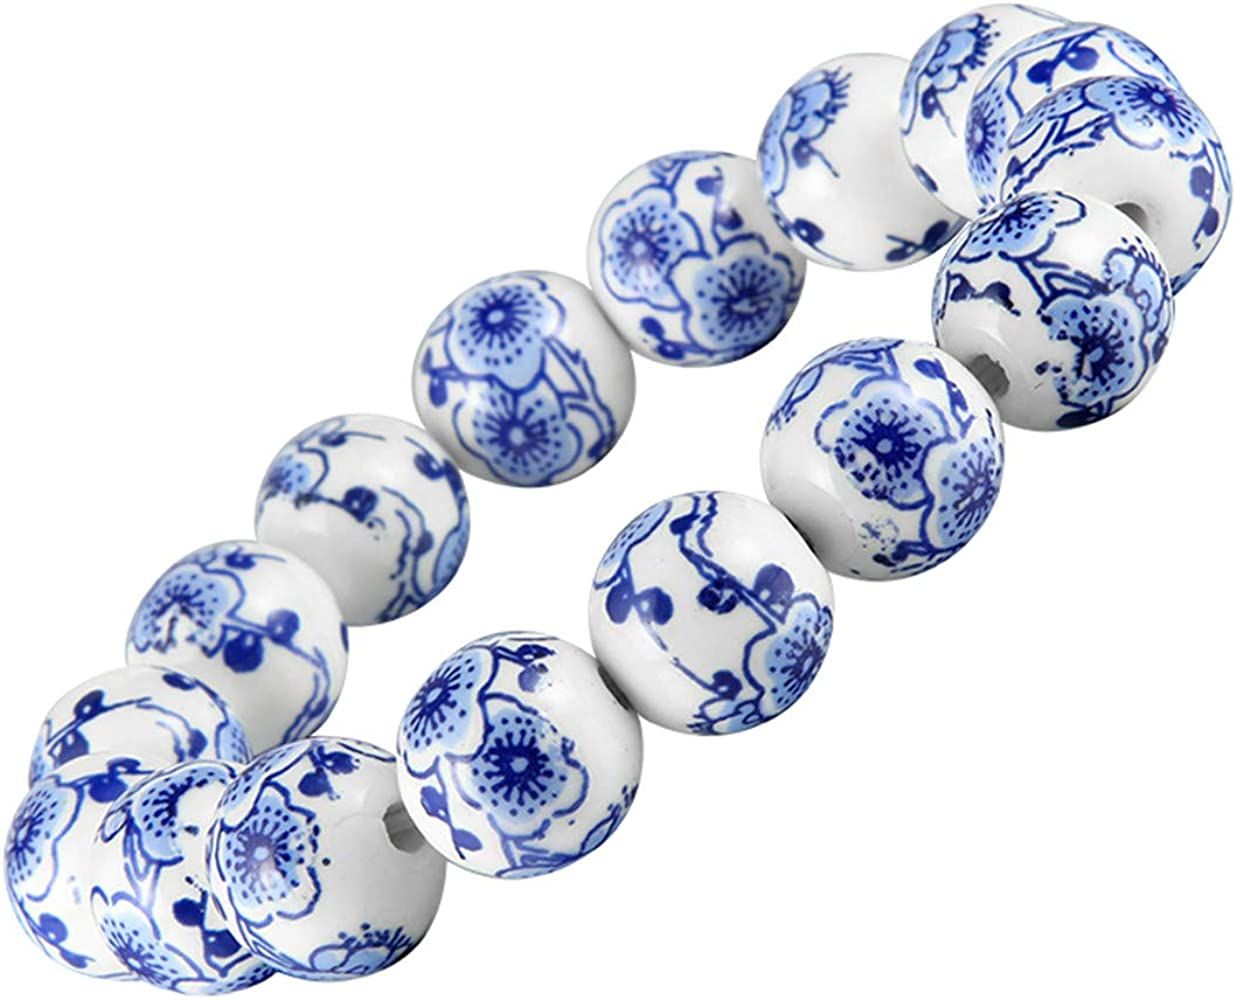 LKXHarleya Women Porcelain Beads Bracelet Vintage Style Blue and White Porcelain Ceramics Wrist B... | Amazon (US)